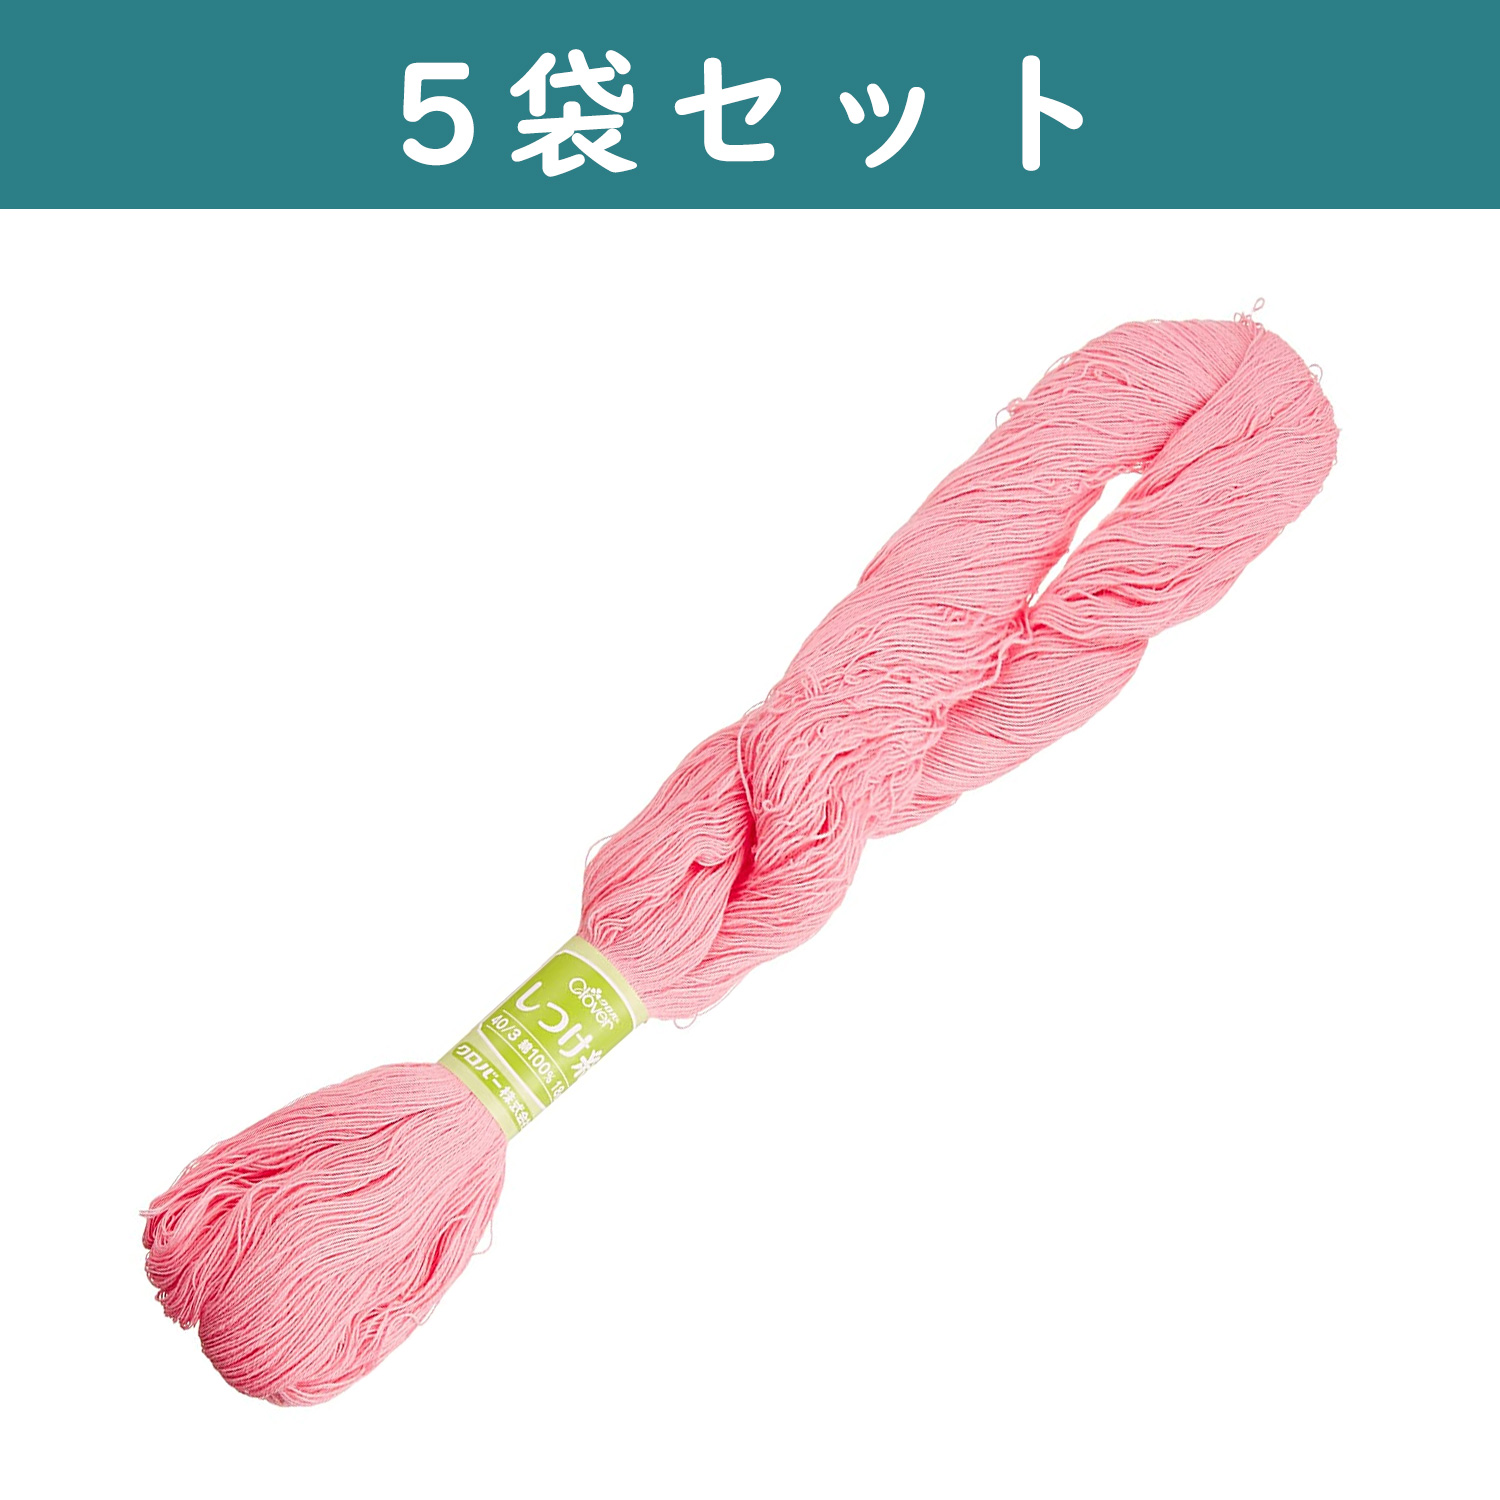 ■CL26-577-5set Clover Basting Thread 18g,1 skein/pack ,Pink ×5pcs/set (set)